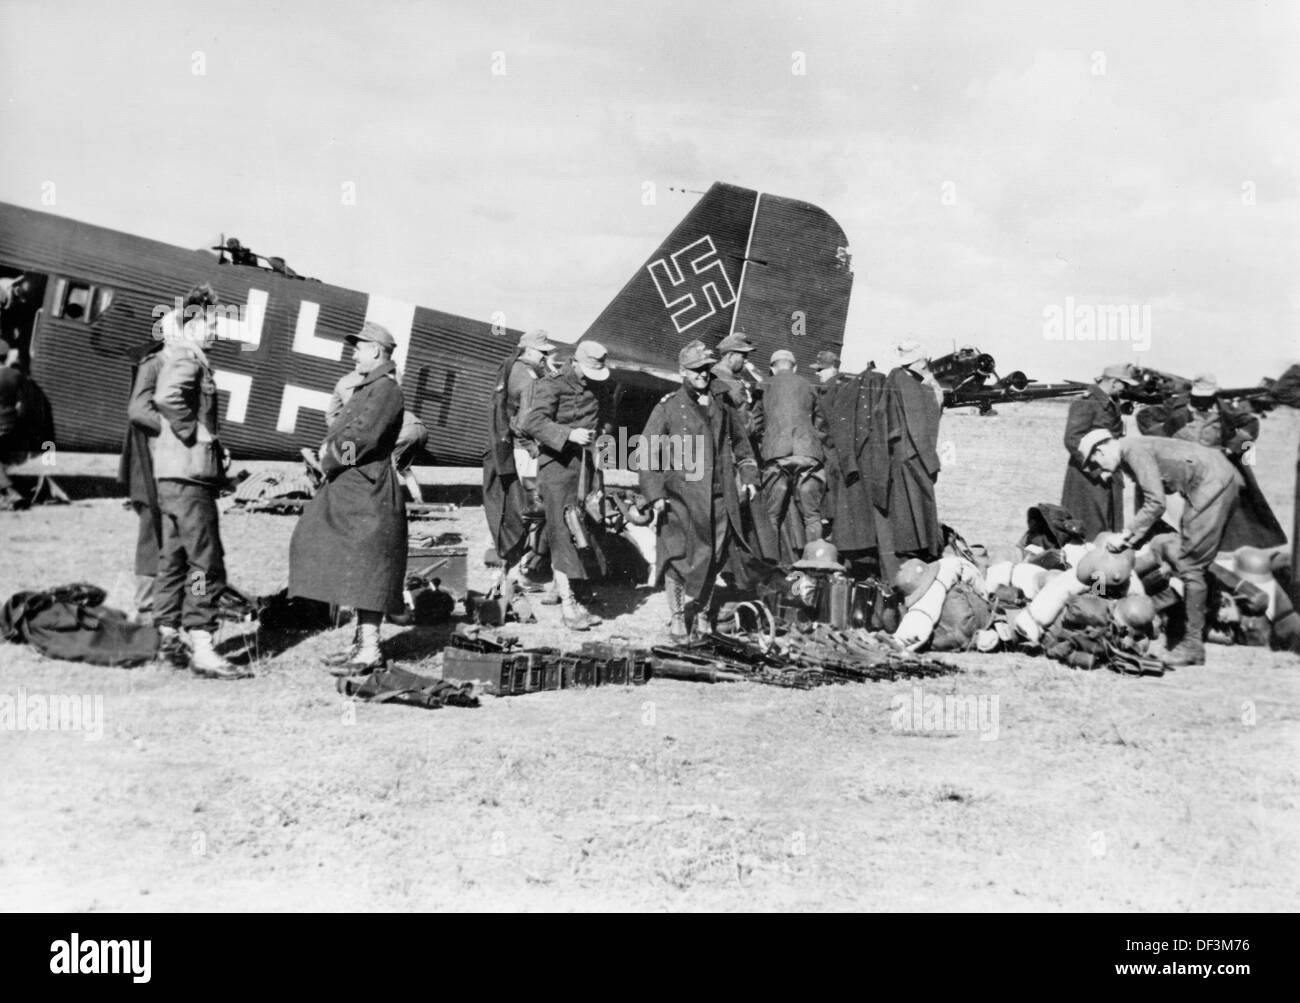 Das Bild der Nazi-Propaganda! Zeigt Soldaten der deutschen Wehrmacht bei ihrer Ankunft in Tunesien, veröffentlicht am 6. Januar 1943. Ort unbekannt. Fotoarchiv für Zeitgeschichte Stockfoto